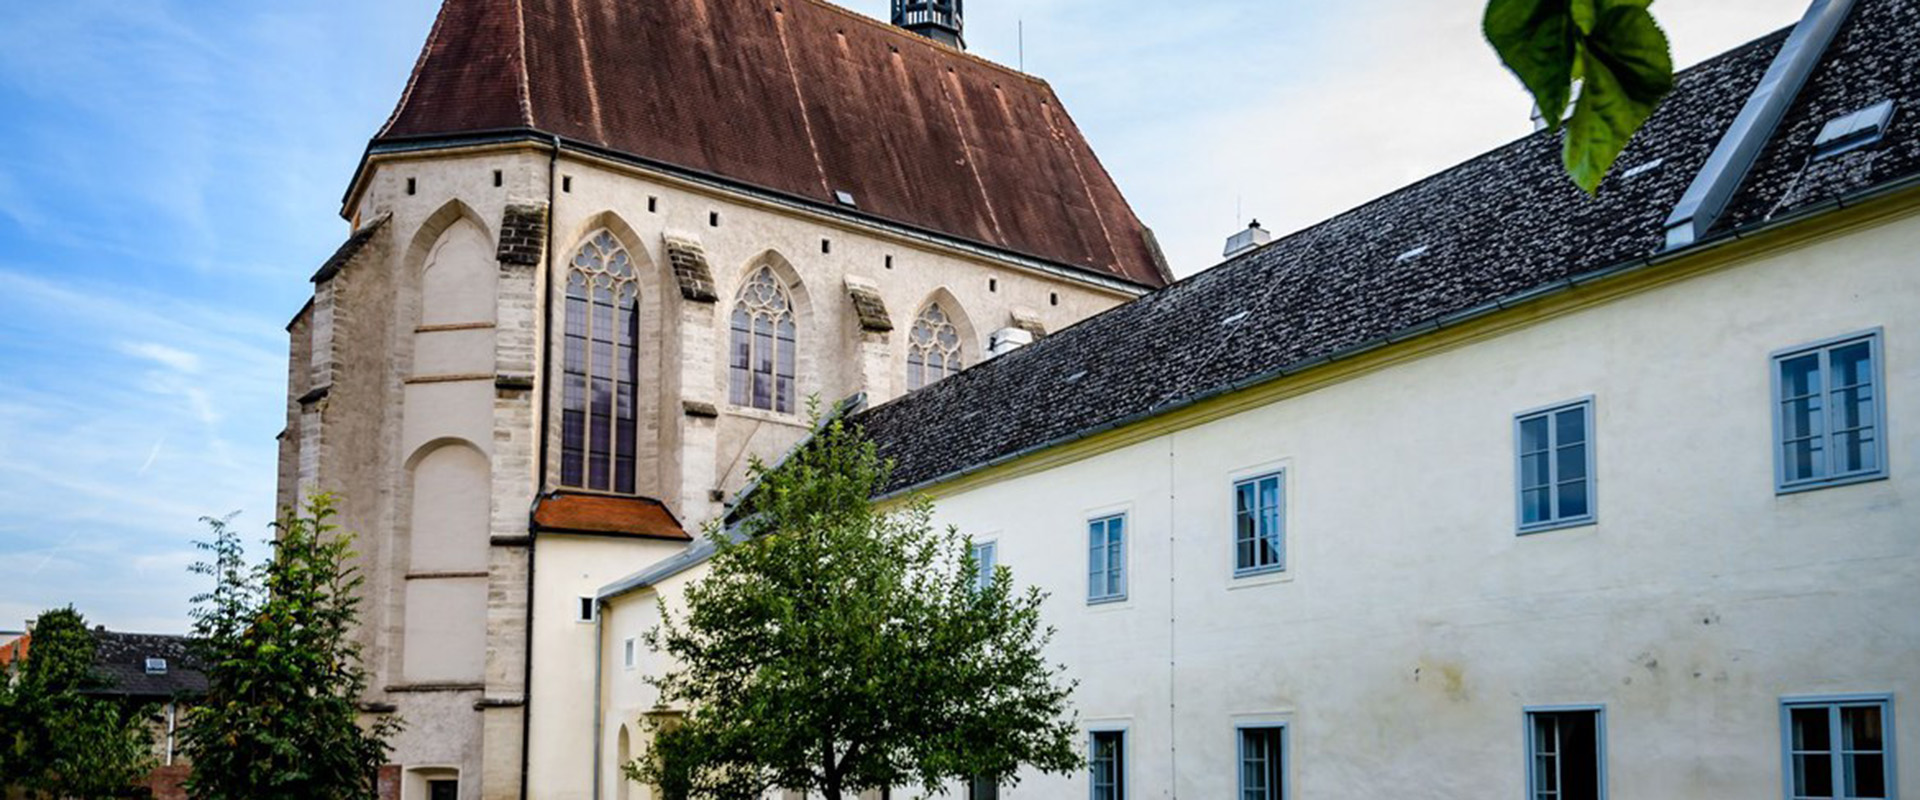 Klangraum Krems Minoritenkirche Bild